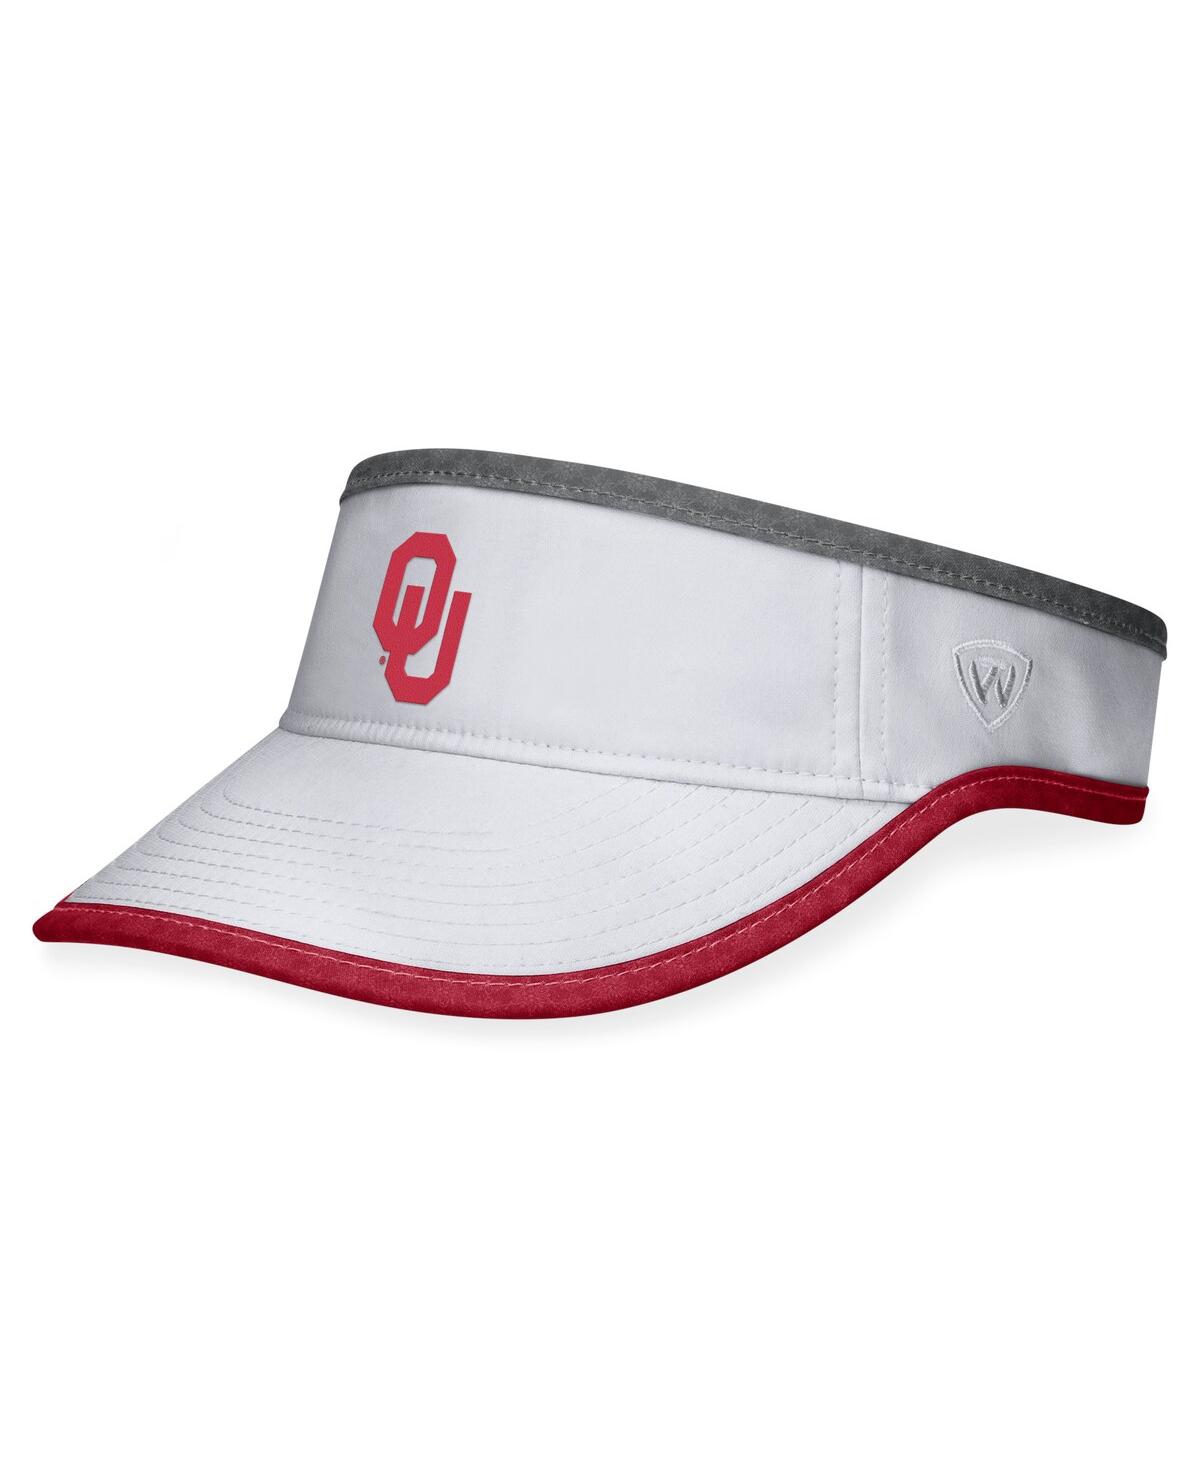 Men's Top of the World White Oklahoma Sooners Daybreak Adjustable Visor - White